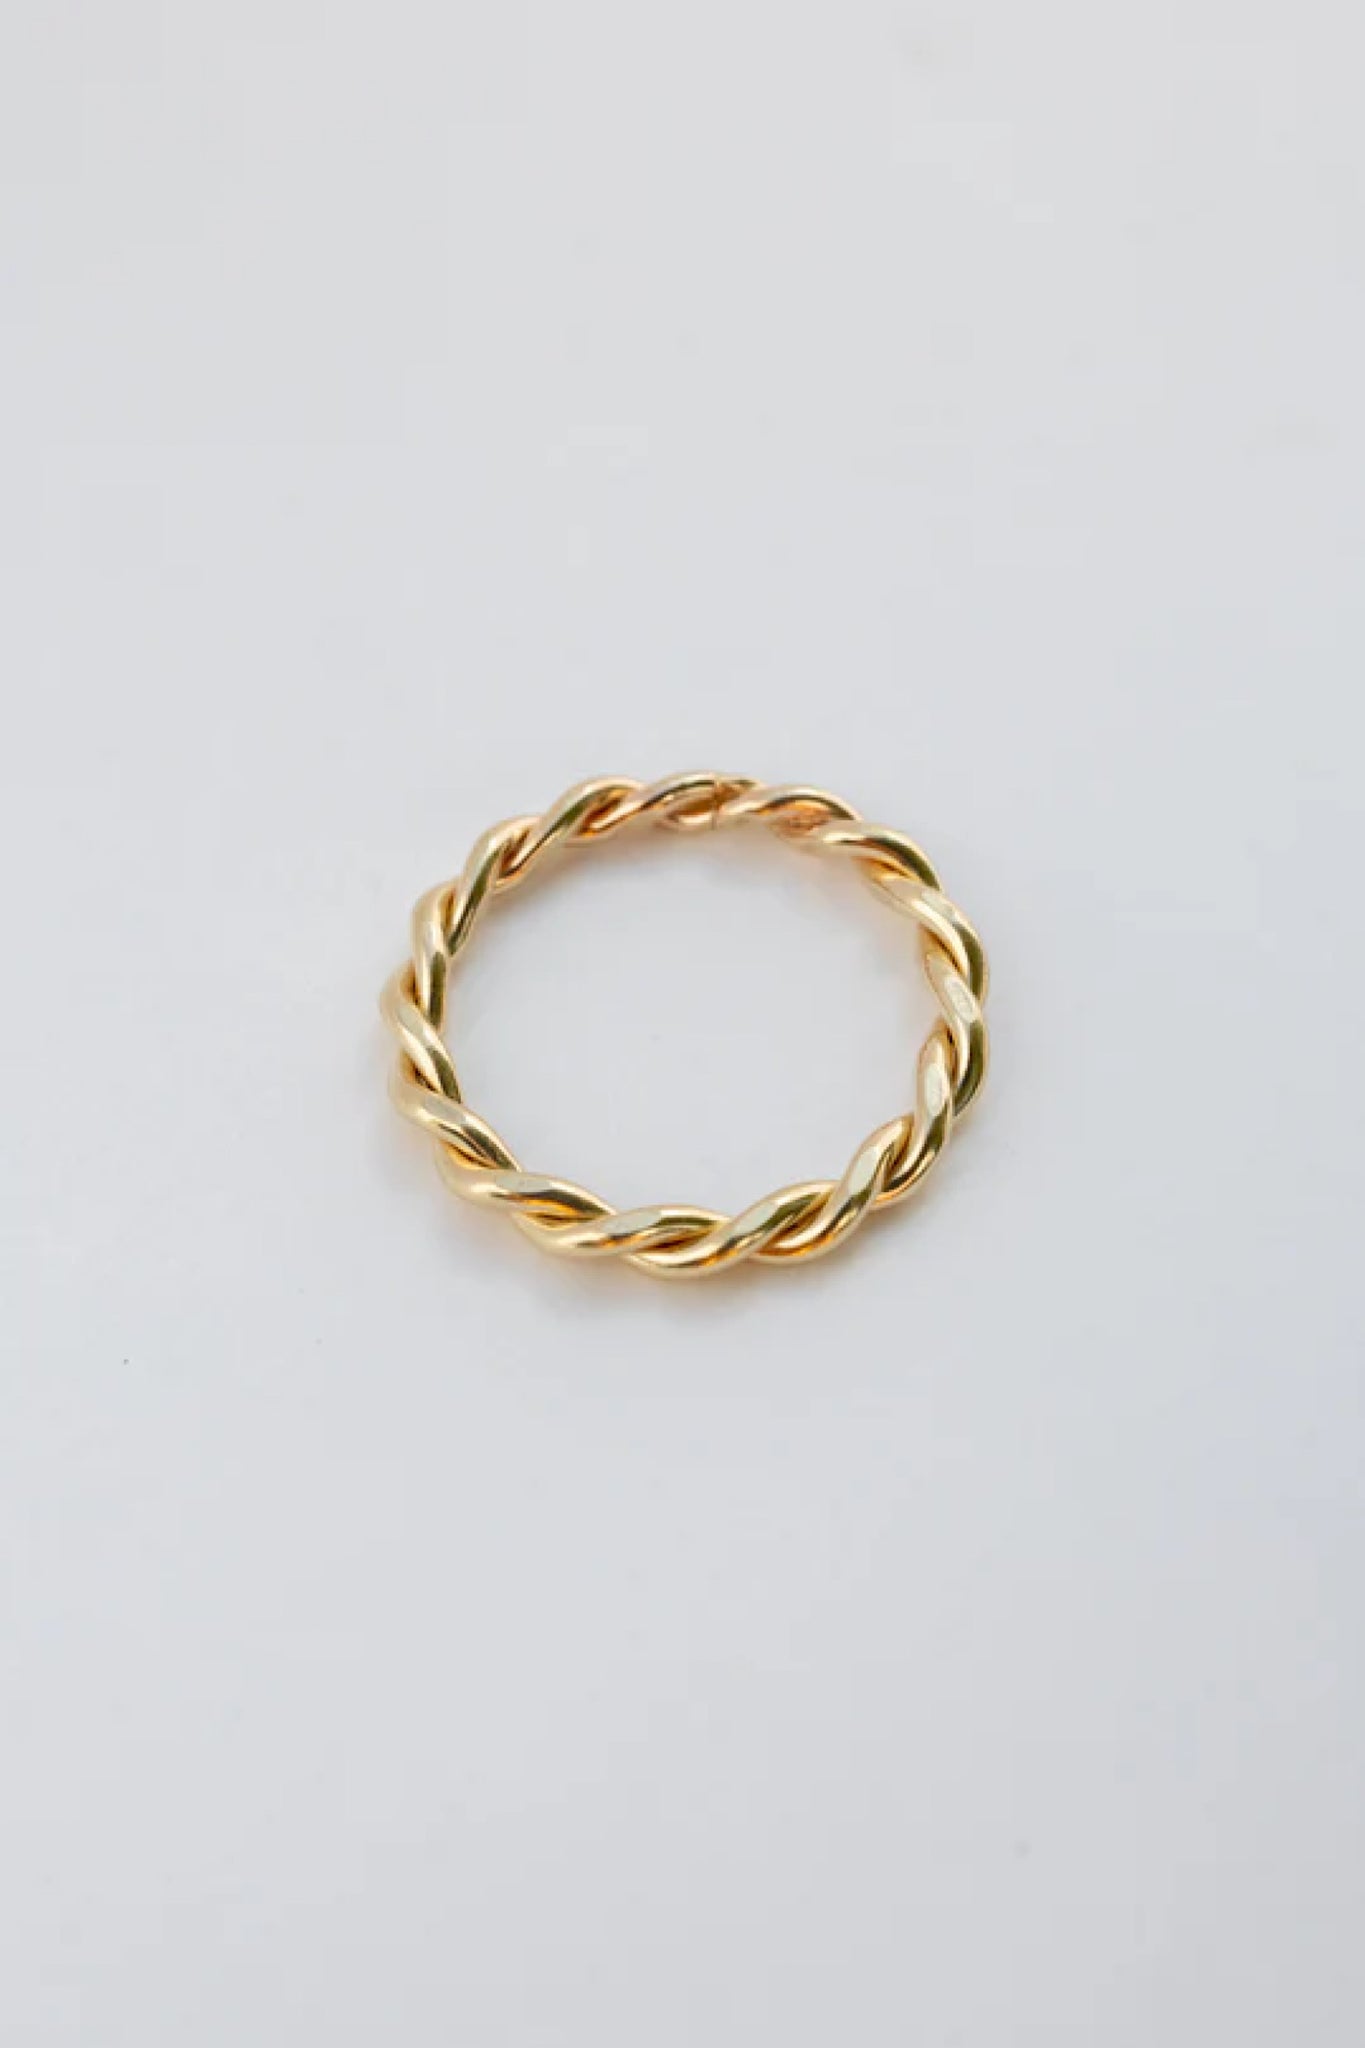 14k Gold Rope Ring